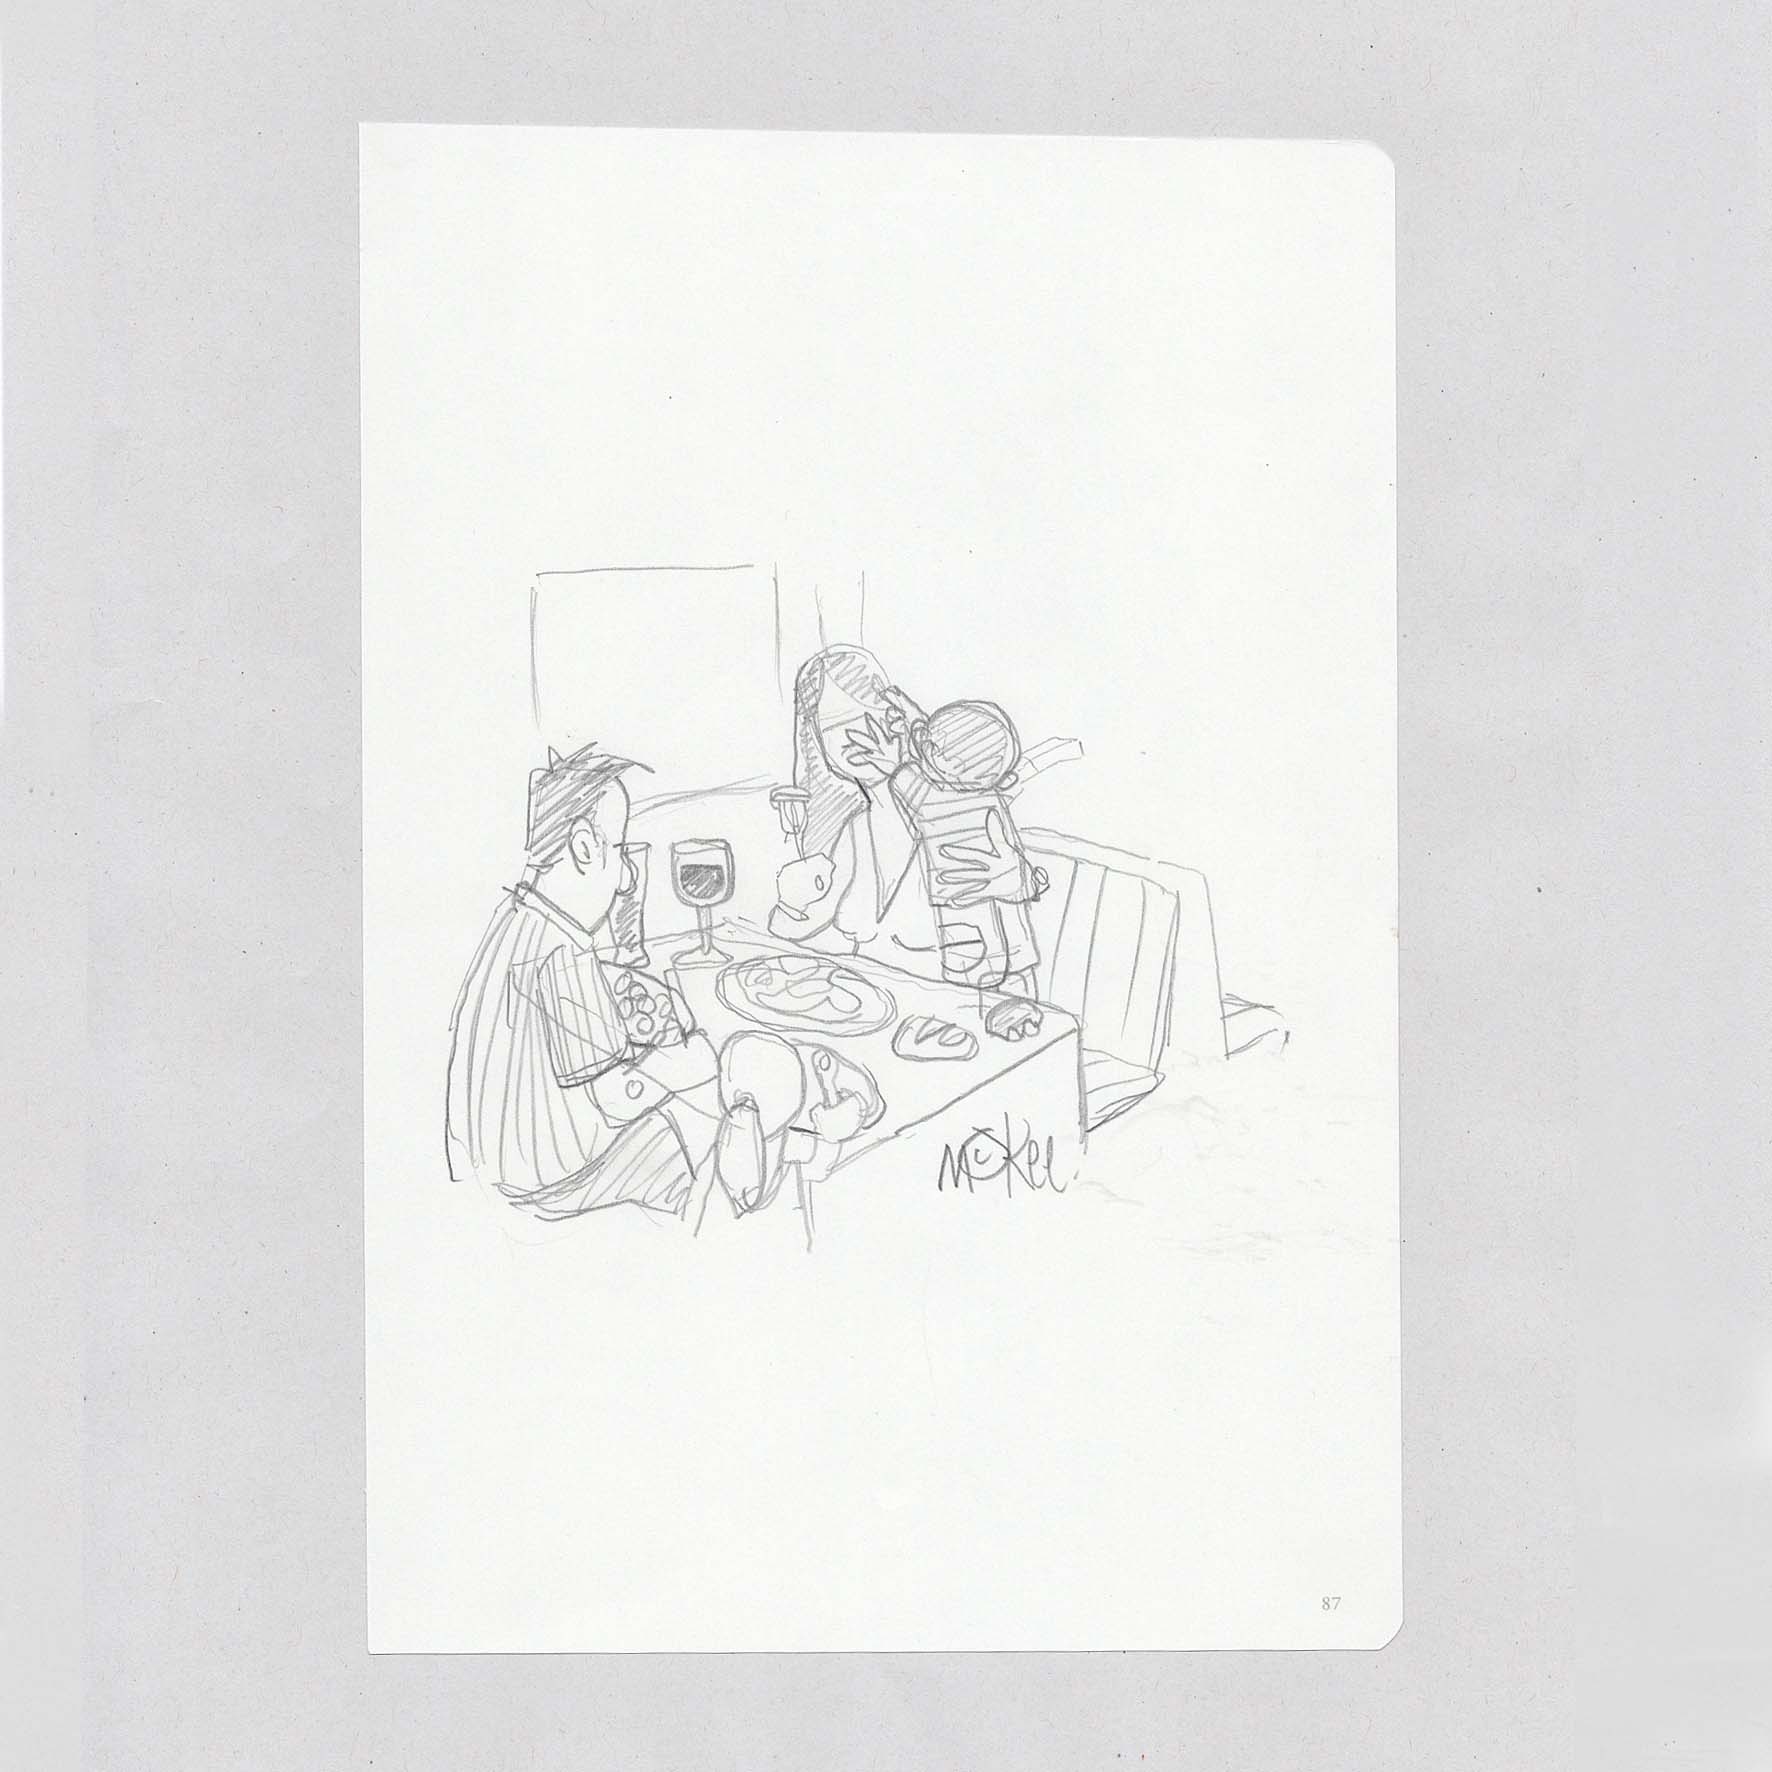 Restless Child In Restaurant - Original Sketch